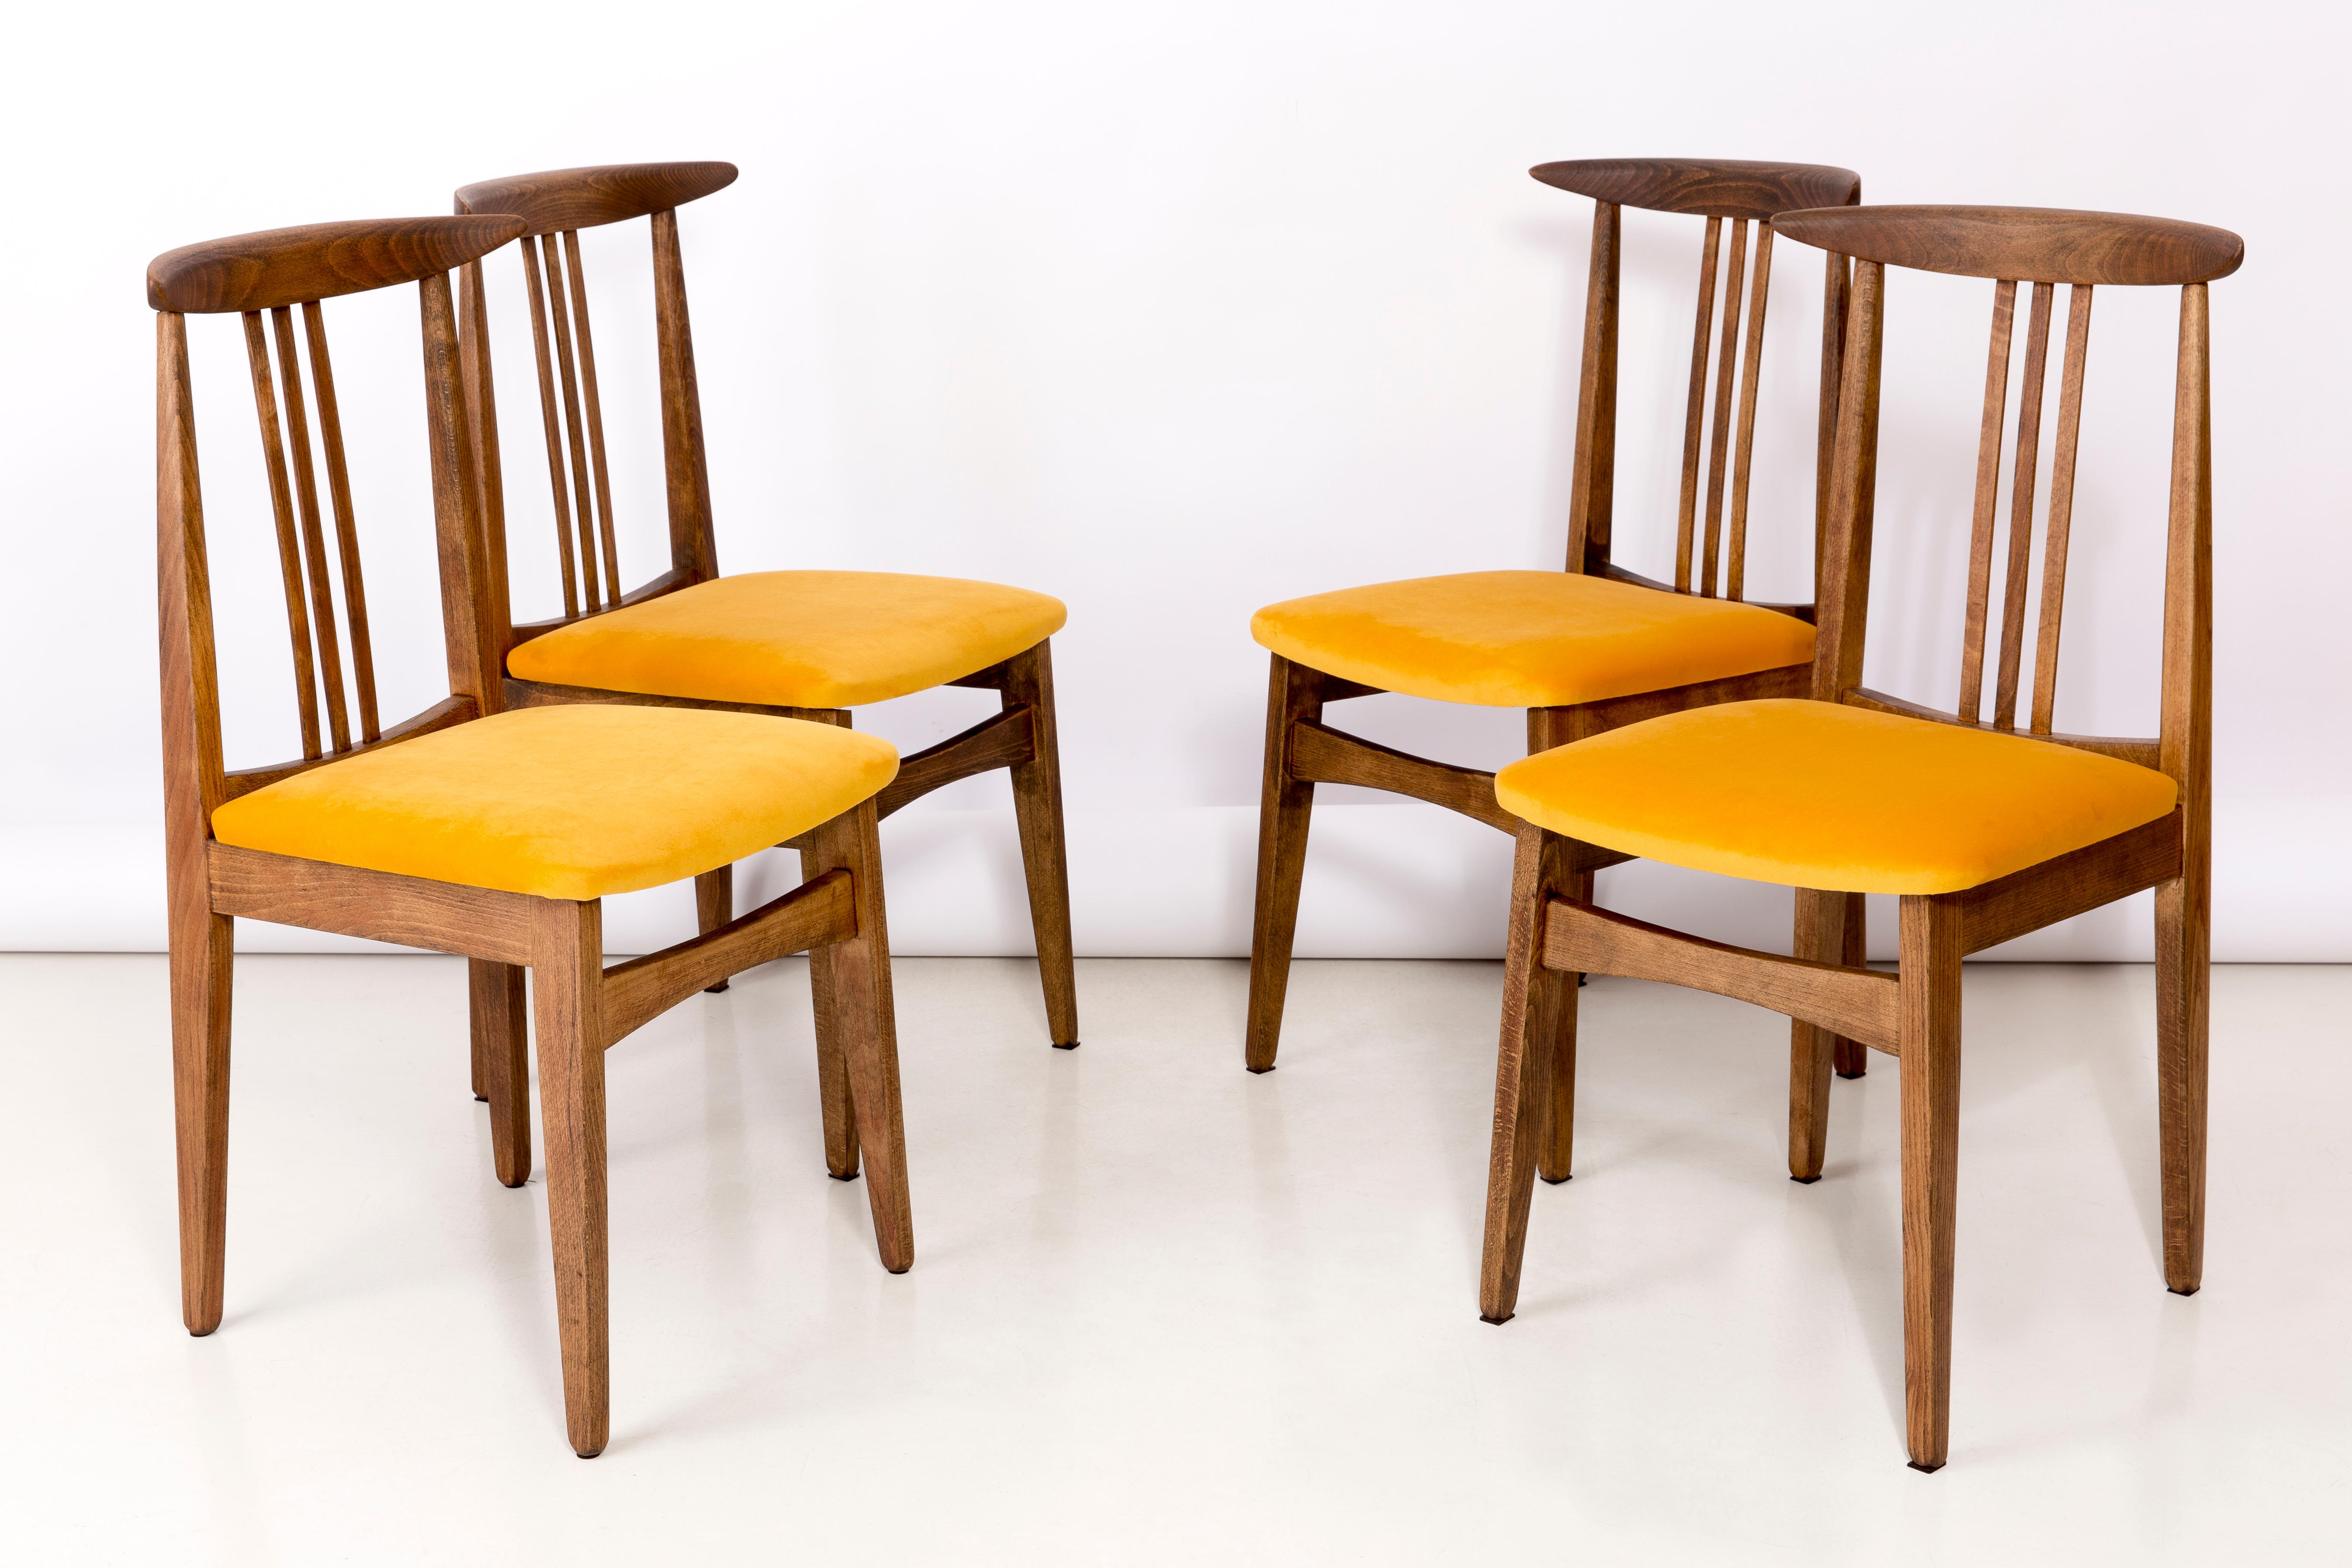 Ensemble de douze chaises en hêtre conçues par M. Zielinski, type 200 / 100B. Fabriqué par le Centre de l'industrie du meuble d'Opole à la fin des années 1960 en Pologne. Les chaises ont subi une rénovation complète de la menuiserie et du